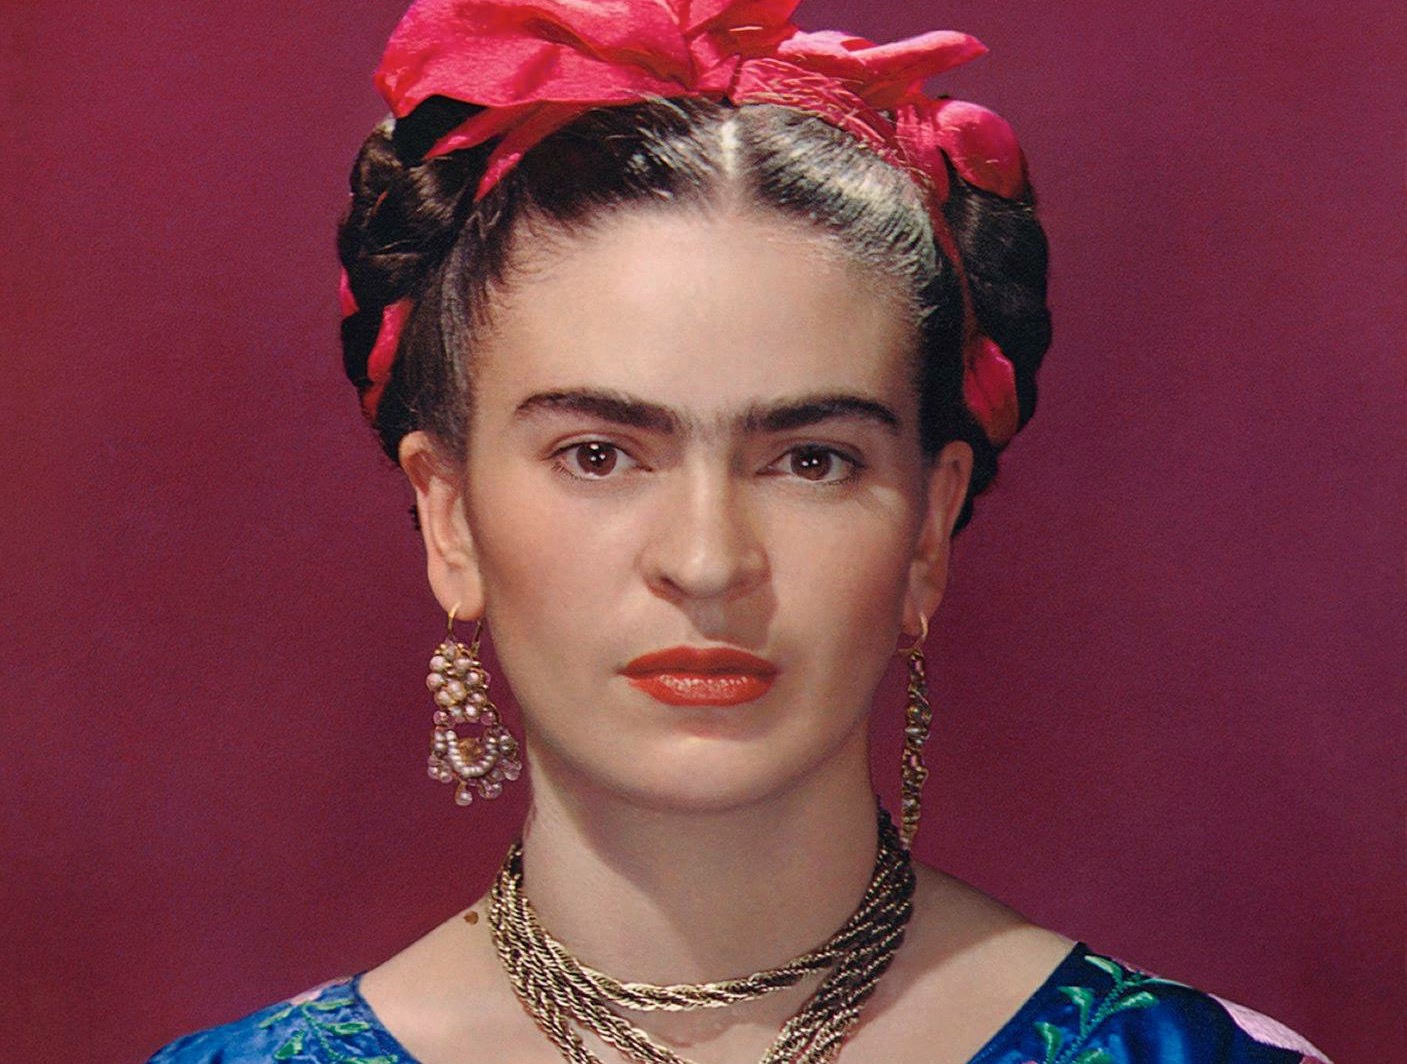 El V&A de Londres estrena exposición de Frida Kahlo | Grazia México y ...